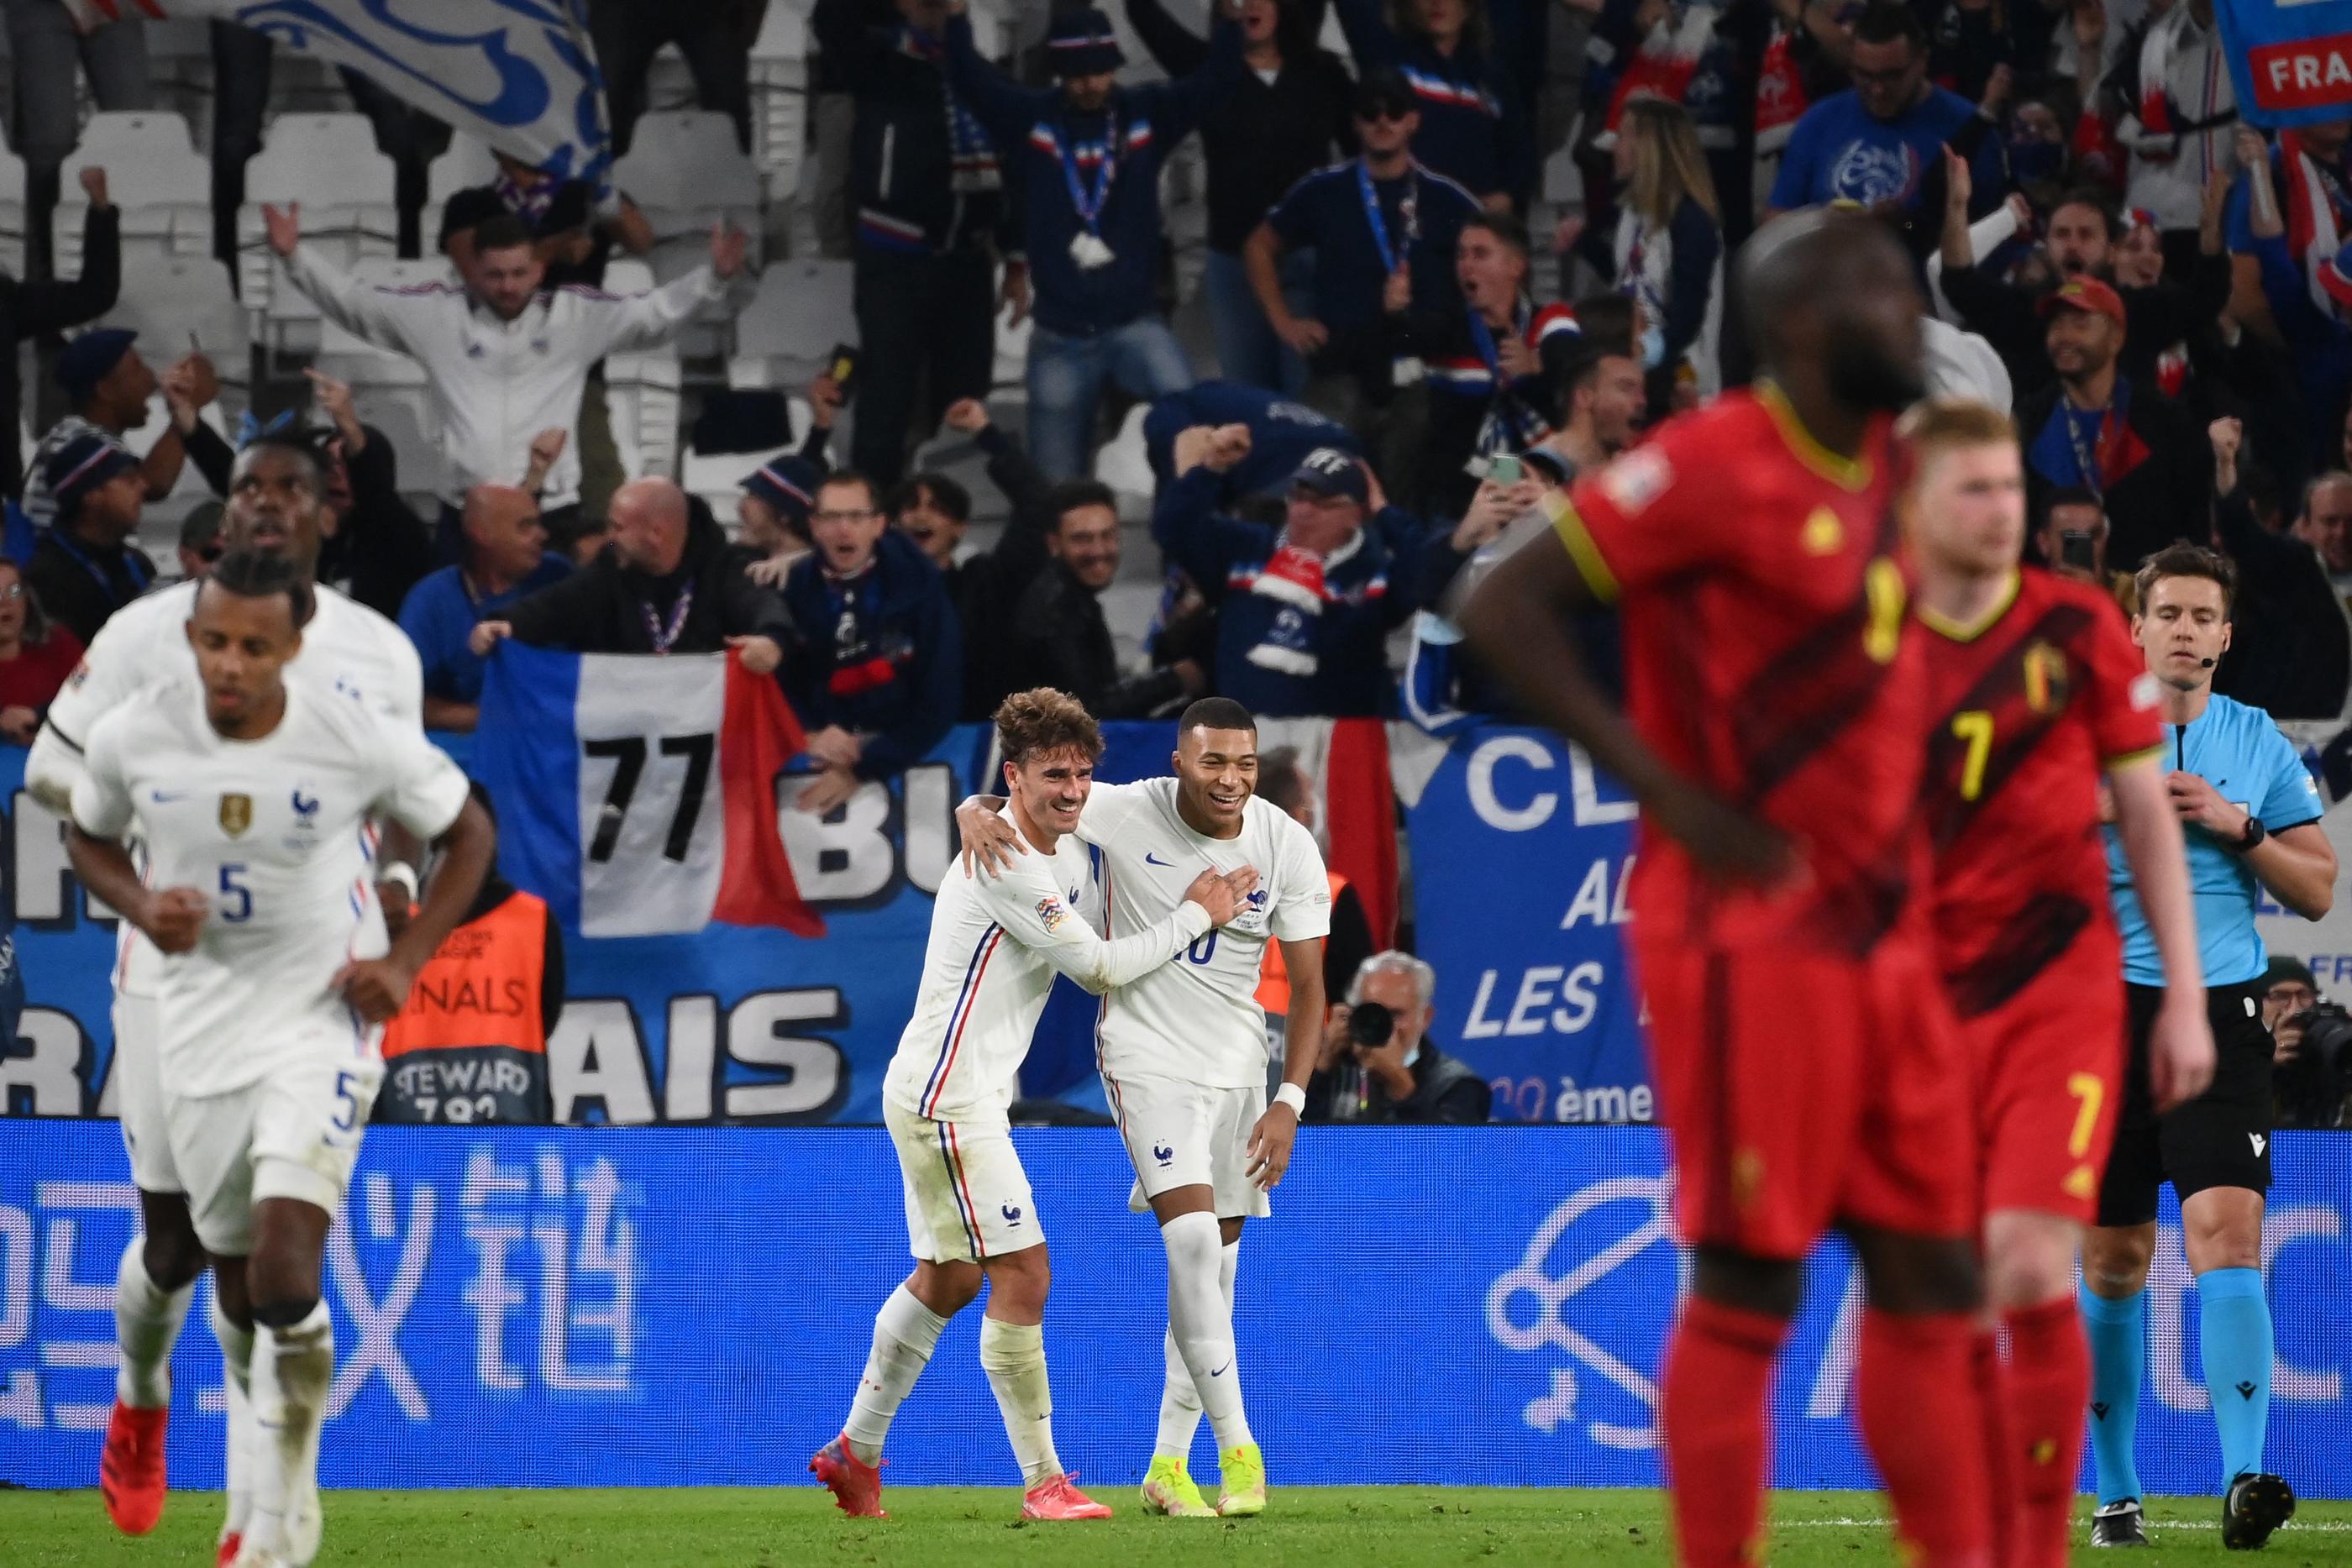 Le dernier épisode de la rivalité belgo-française : la demi-finale de la Ligue des nations 2021, remportée par les Bleus de Griezmann et Mbappé. AFP/Franck Fife